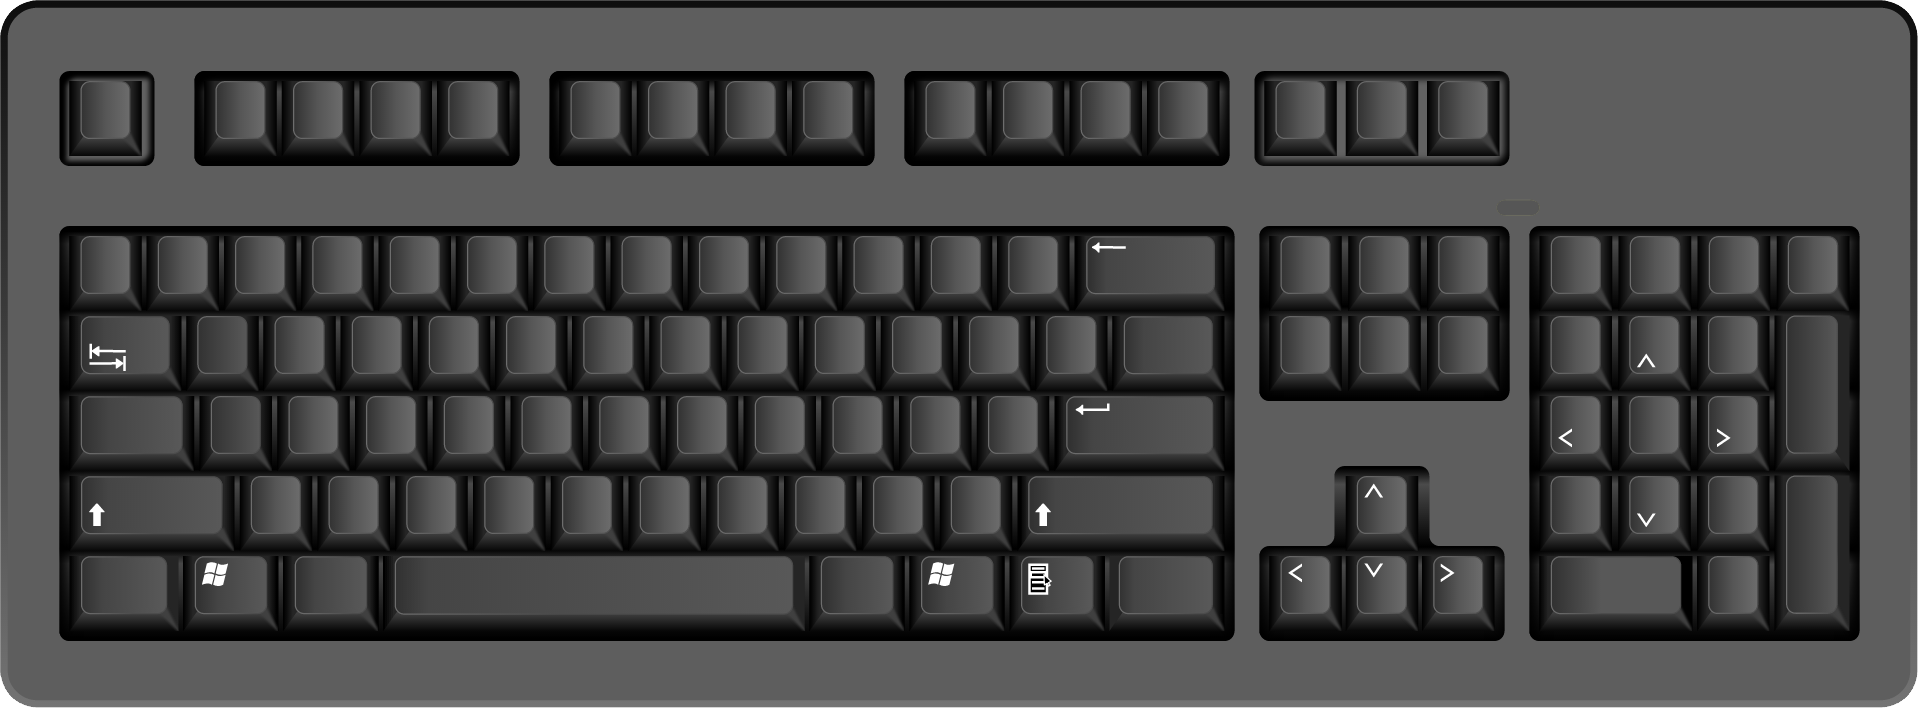 แป้นพิมพ์คอมพิวเตอร์สีดำ